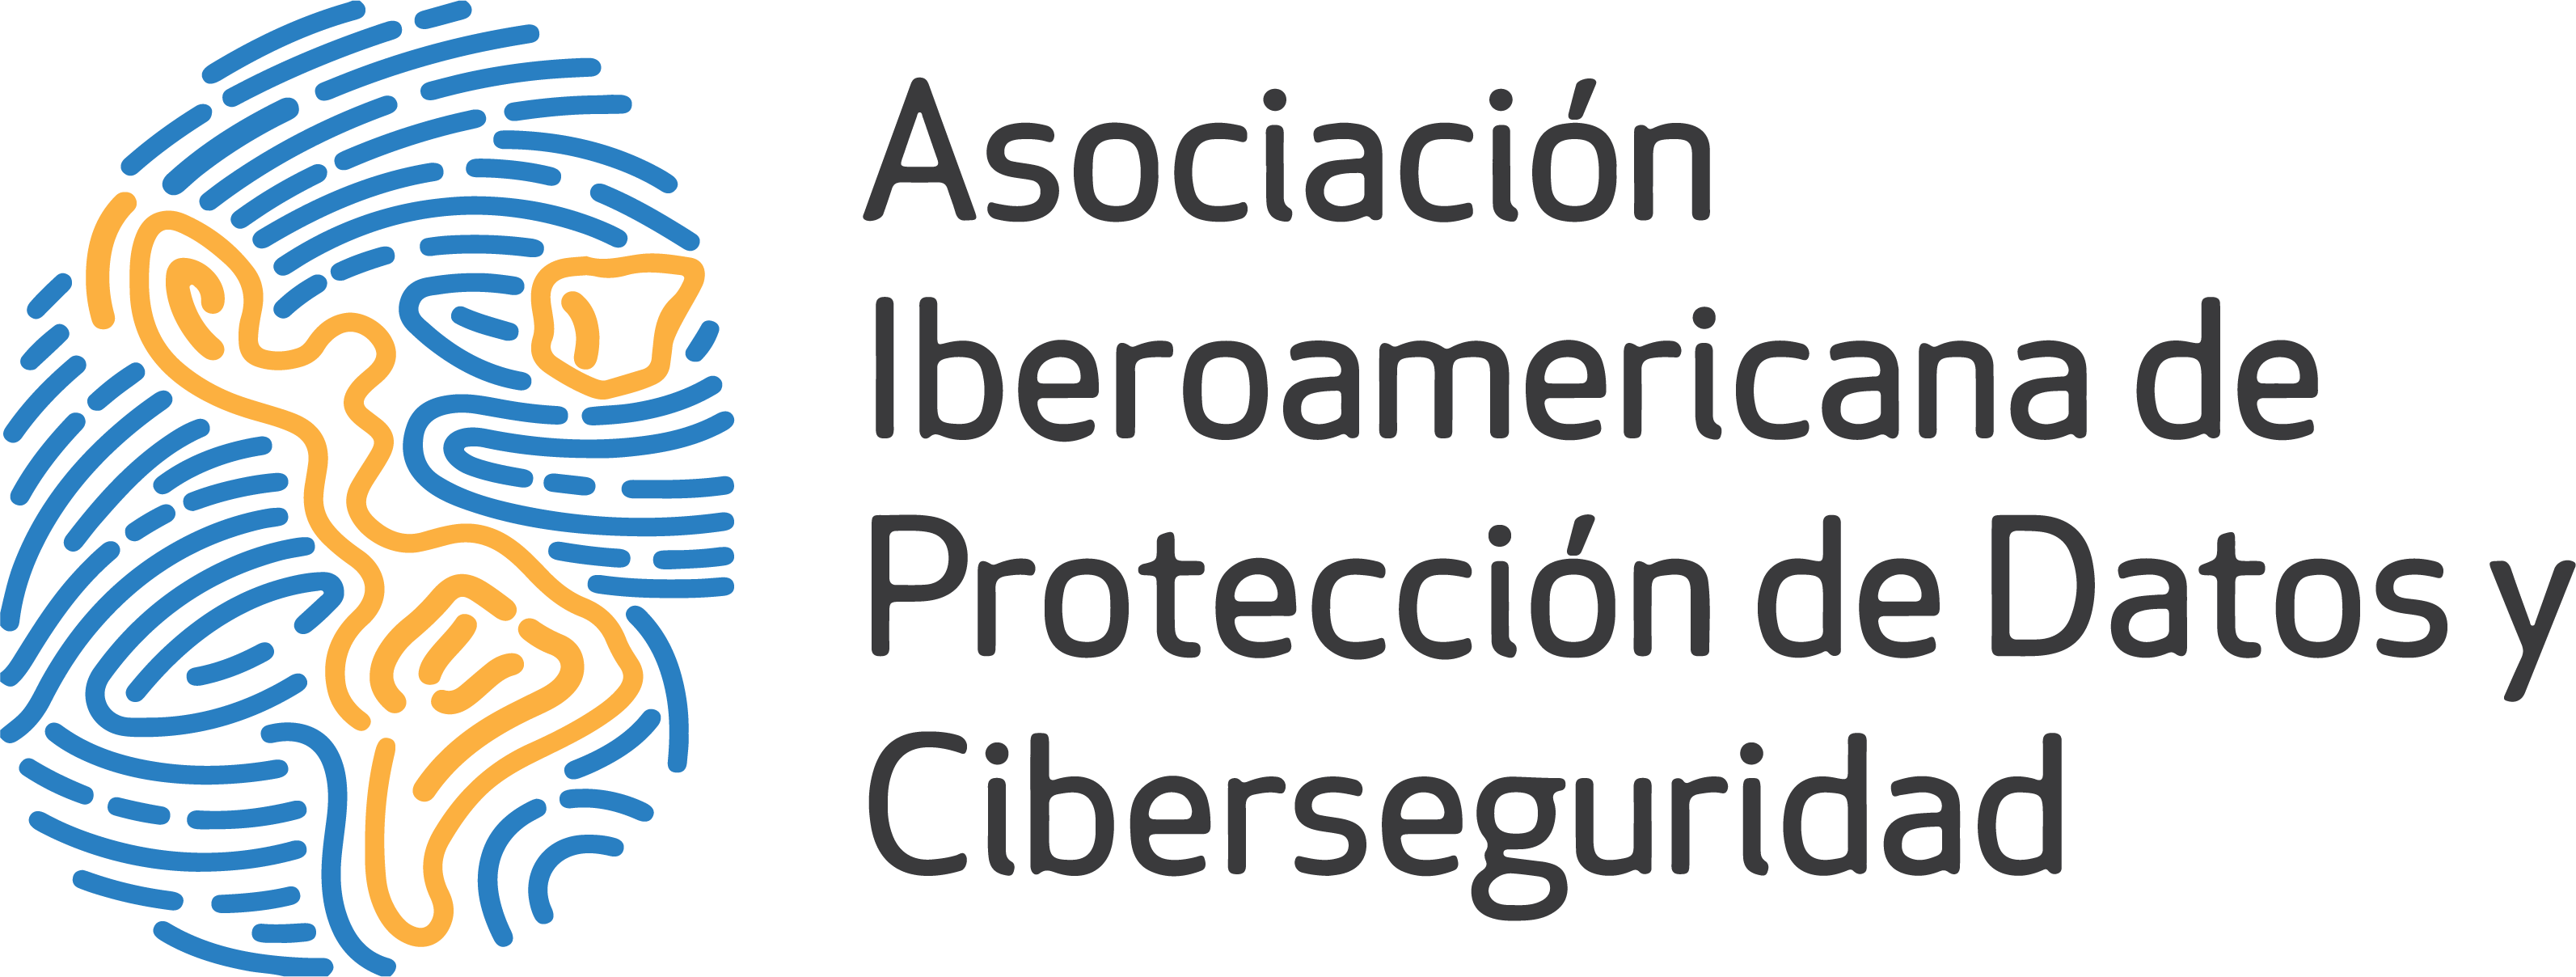 Asociación Iberoamericana de Protección de Datos y Ciberseguridad